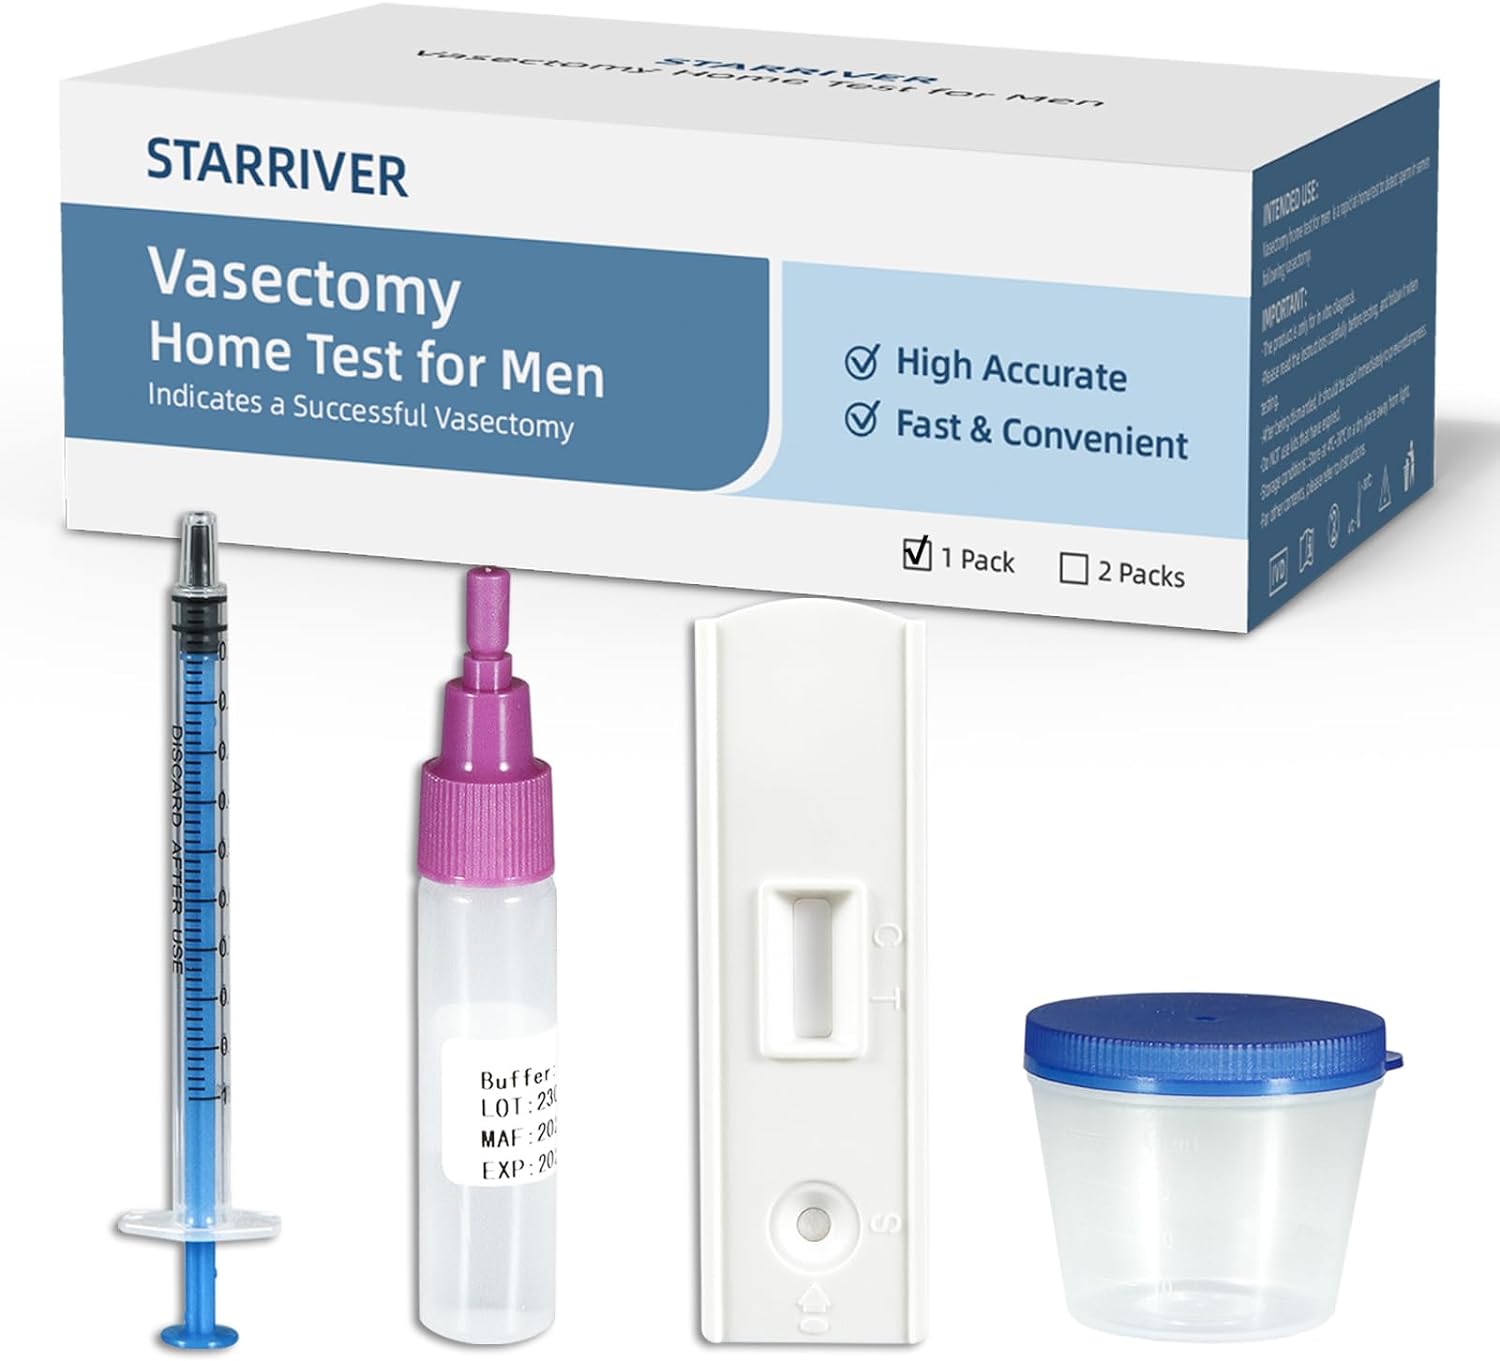 starriver vasectomy test kit review